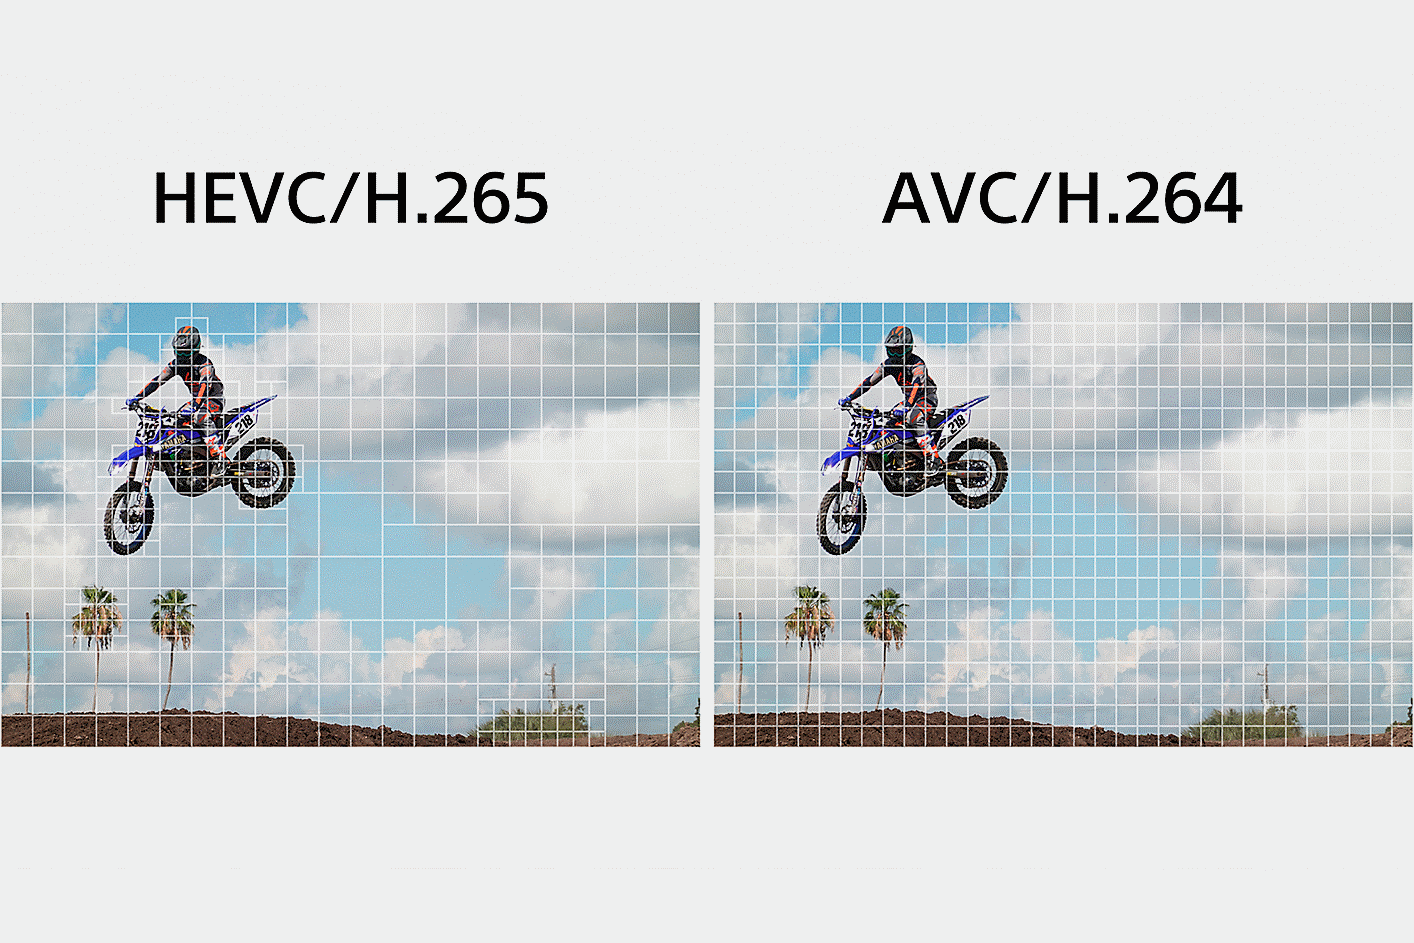 左側：HEVC/H.265 的插圖，將短片的複雜部分劃分成更精細的區段，以便處理資料；右側：AVC/H.264 的插圖，平均劃分整個影片影像，以便處理資料